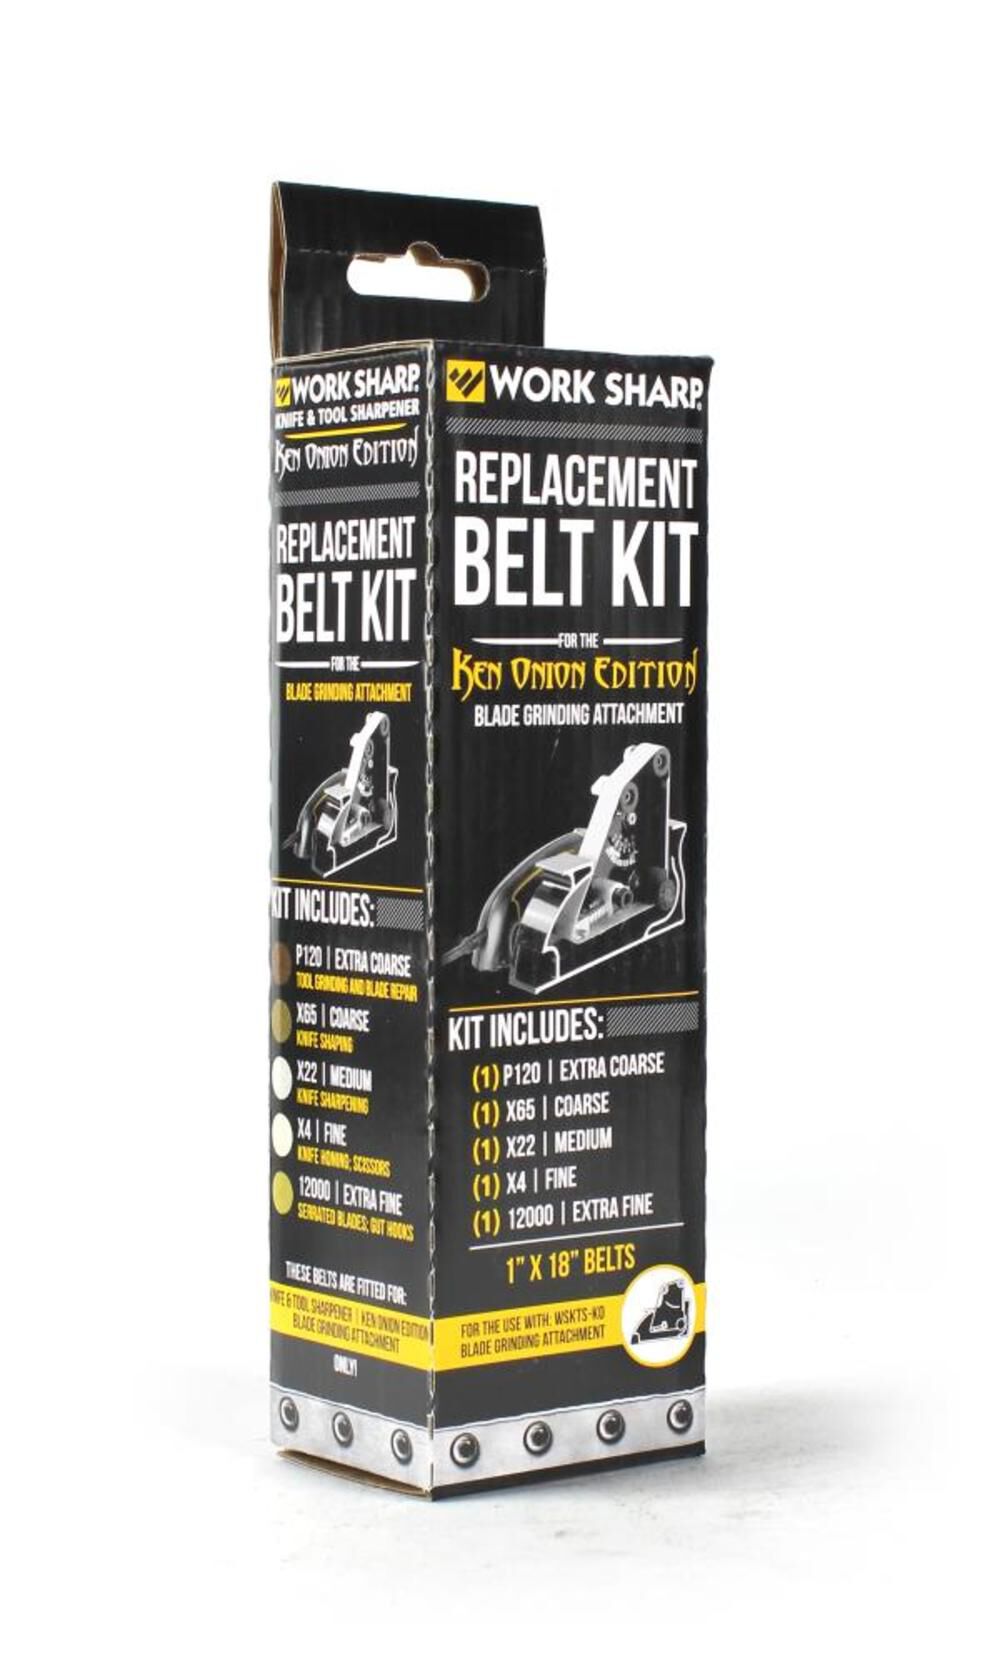 Work Sharp Ken Onion Blade Grinder Attachment Belt Kit WSSAKO81115 